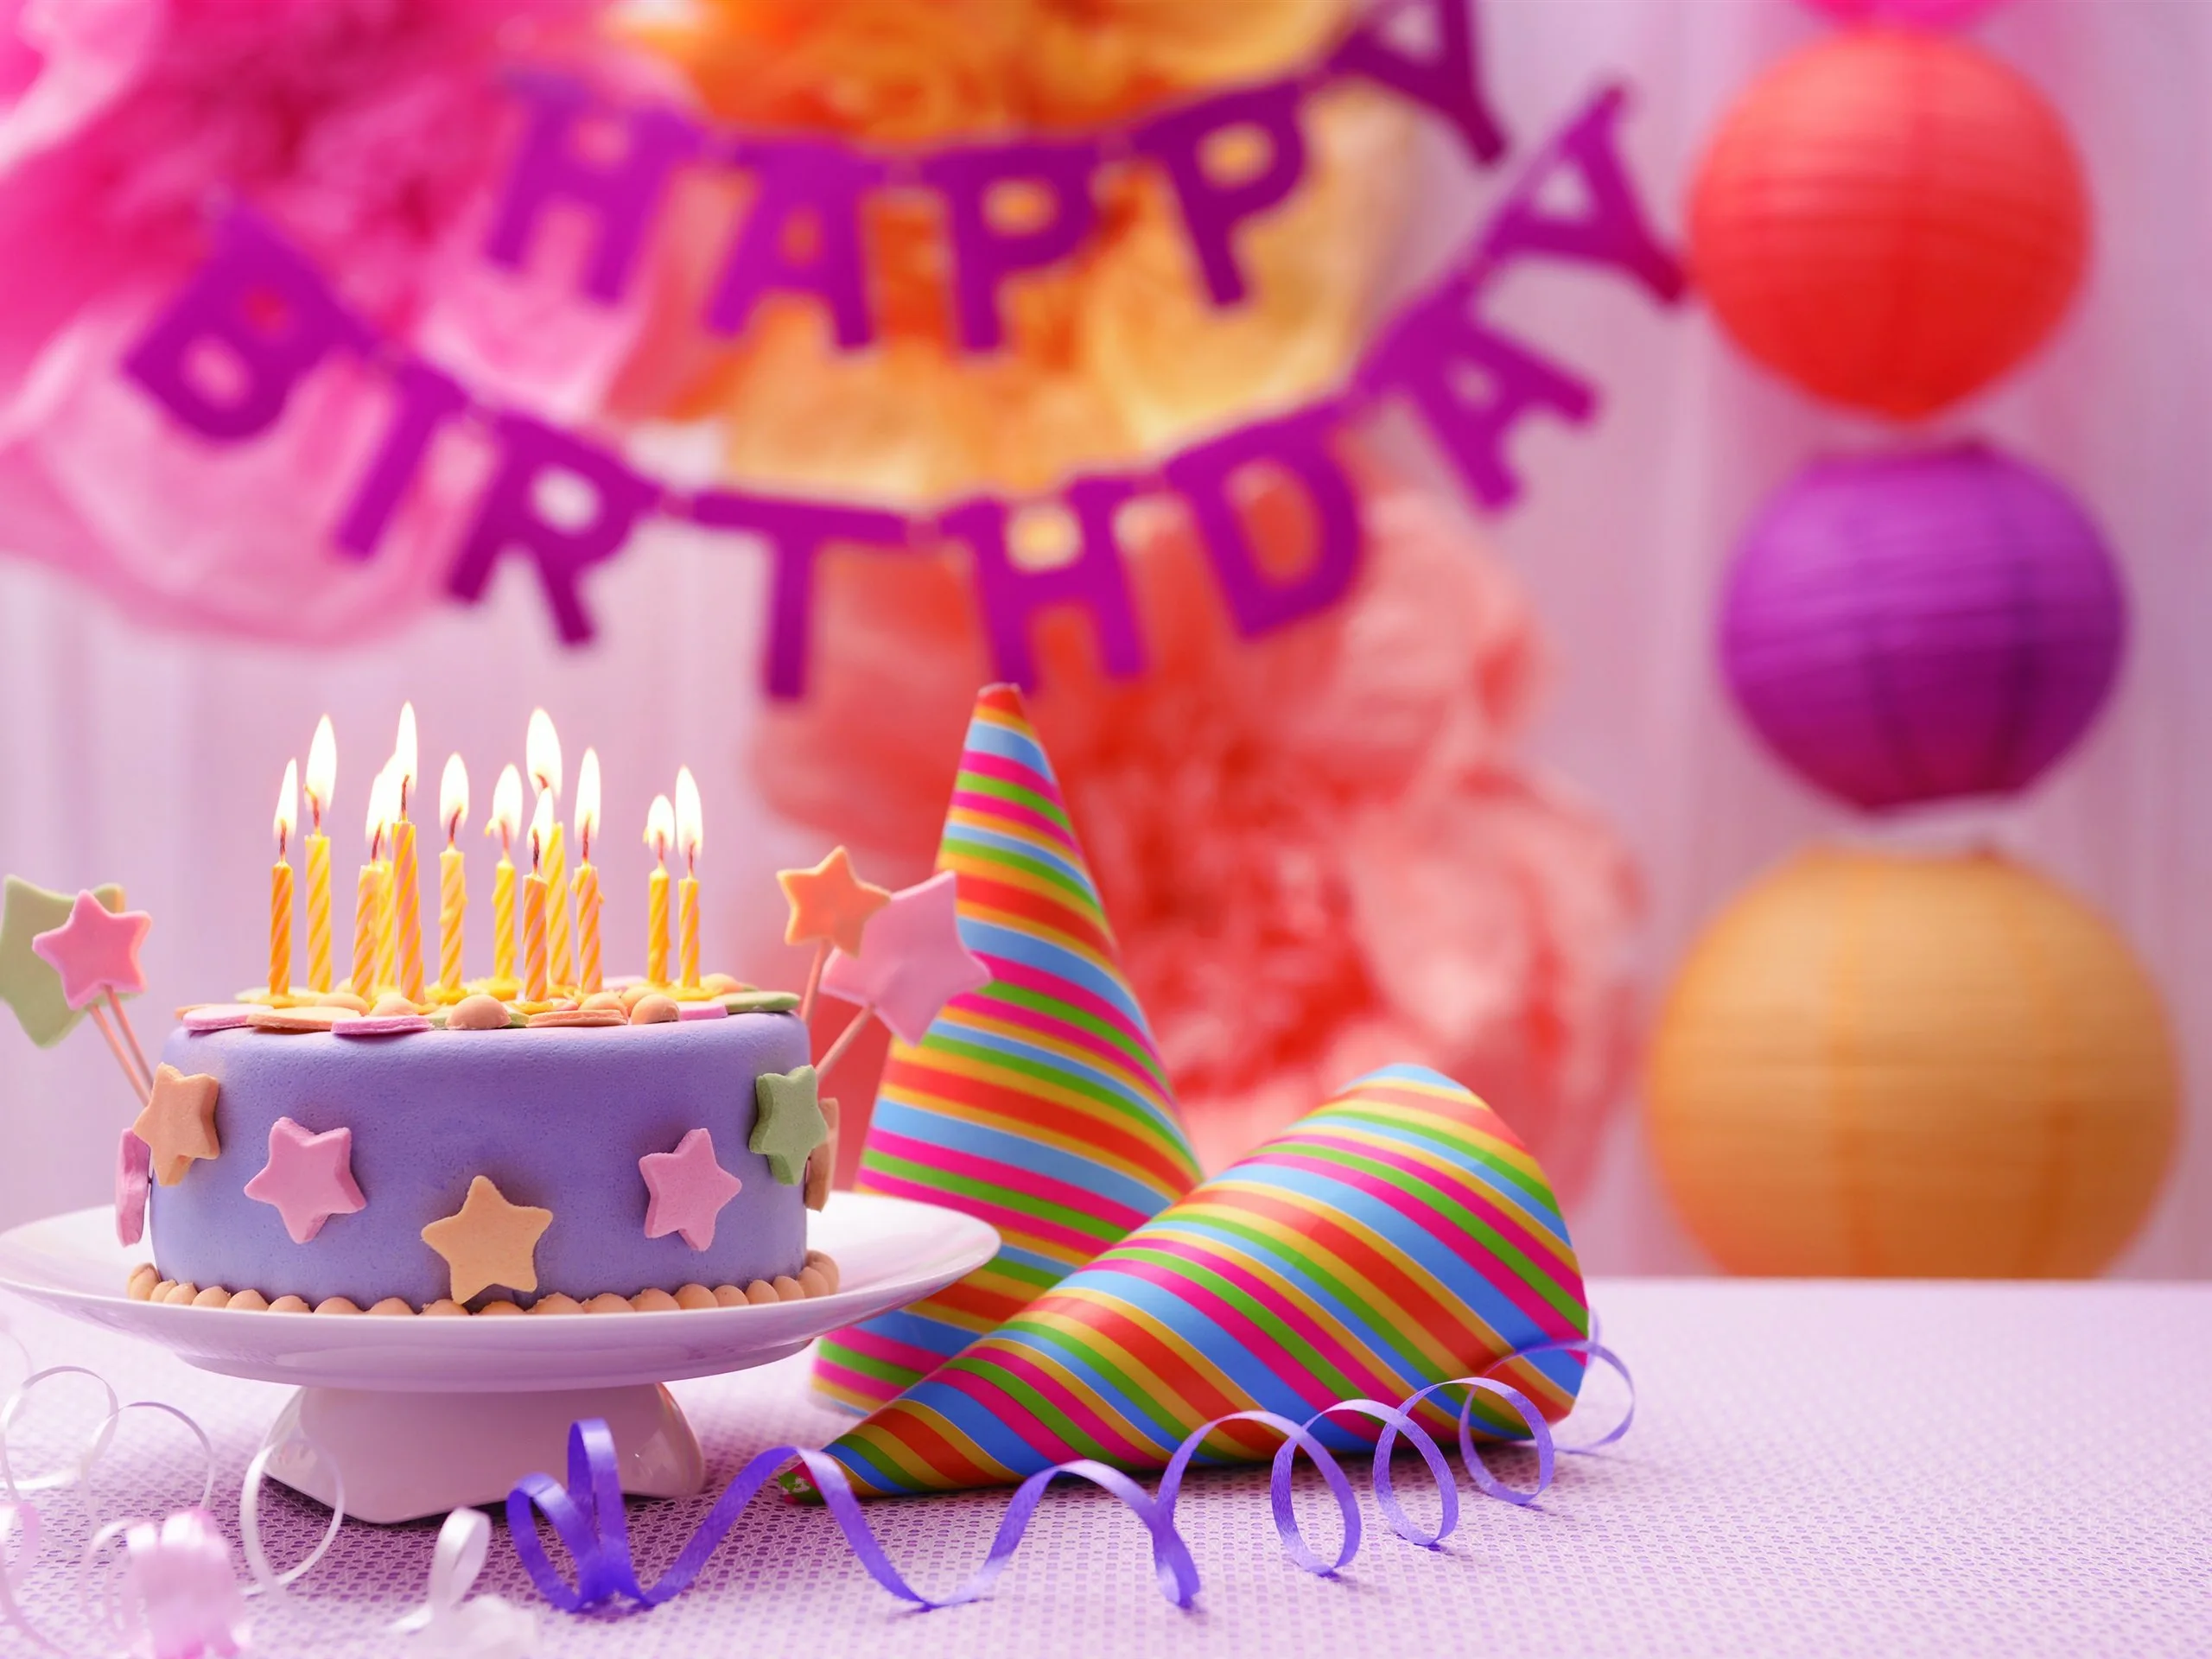 С днем рождения. Тортик с днем рождения. Открытка с днём рождения торт. С днем рождения торт и цветы. 26 картинка день рождения